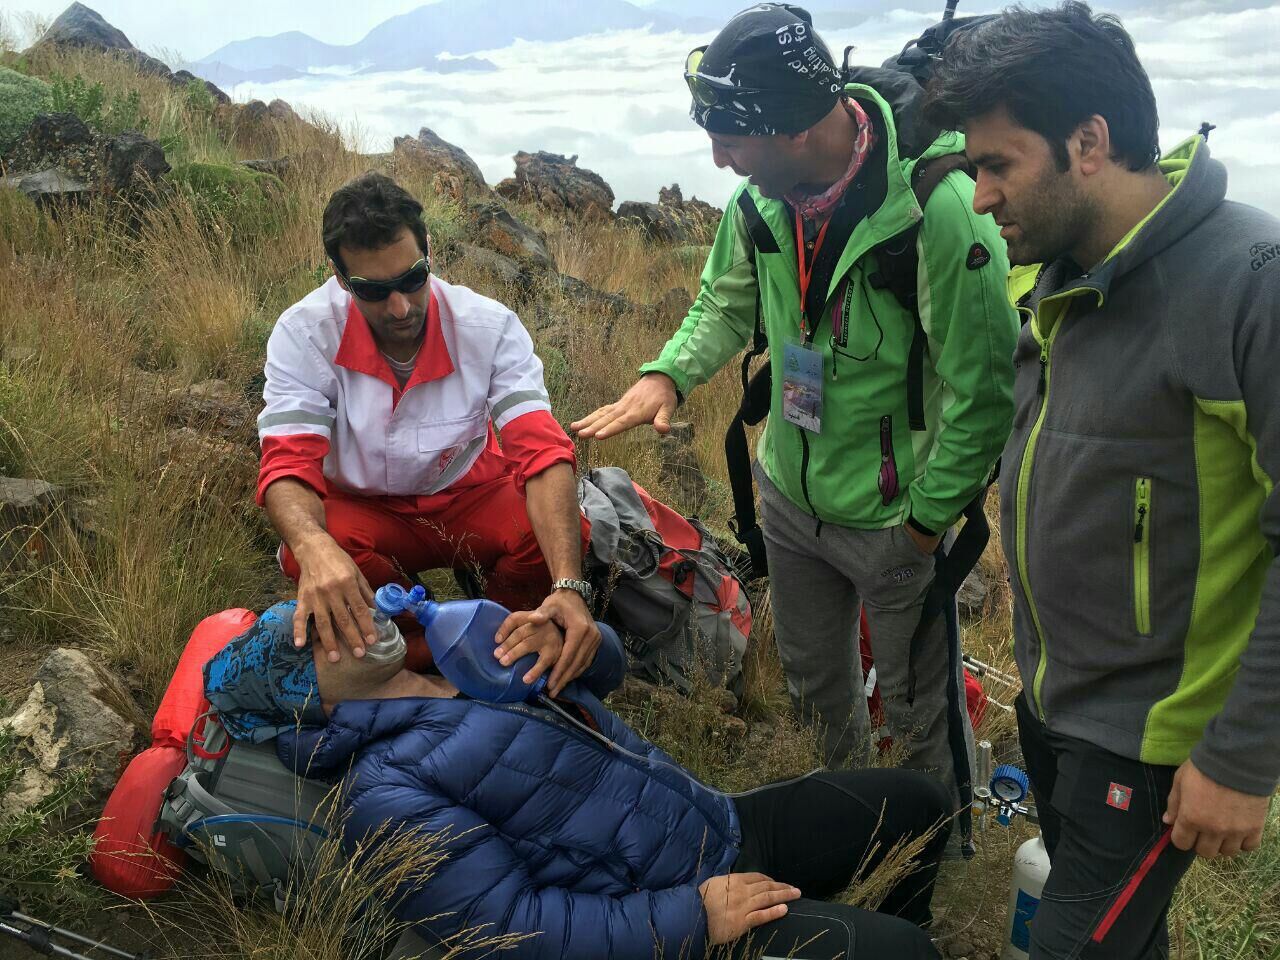 بیشترین عملیات نجات در کوهستان یافتن مفقودان کوهنوردی است